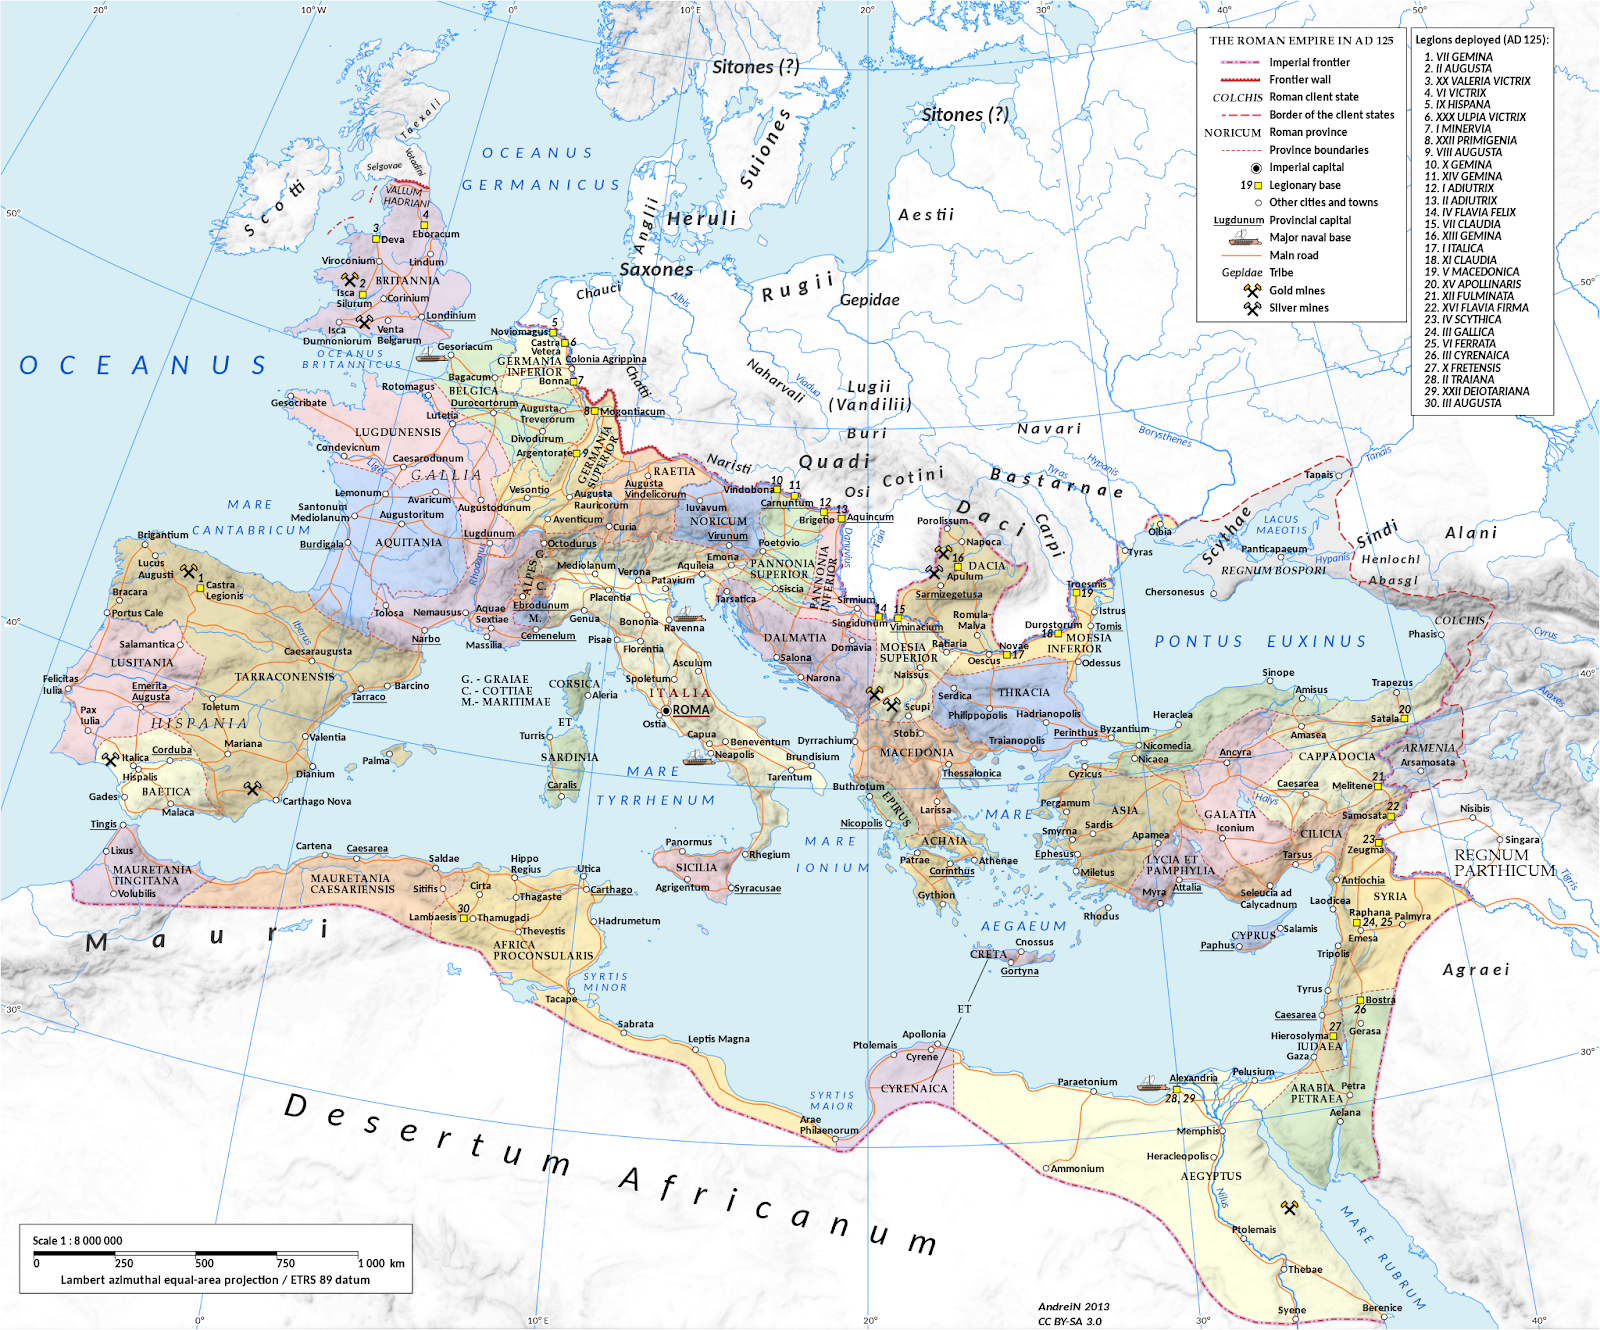 Quando l'Impero Romano raggiunse il suo massimo splendore?